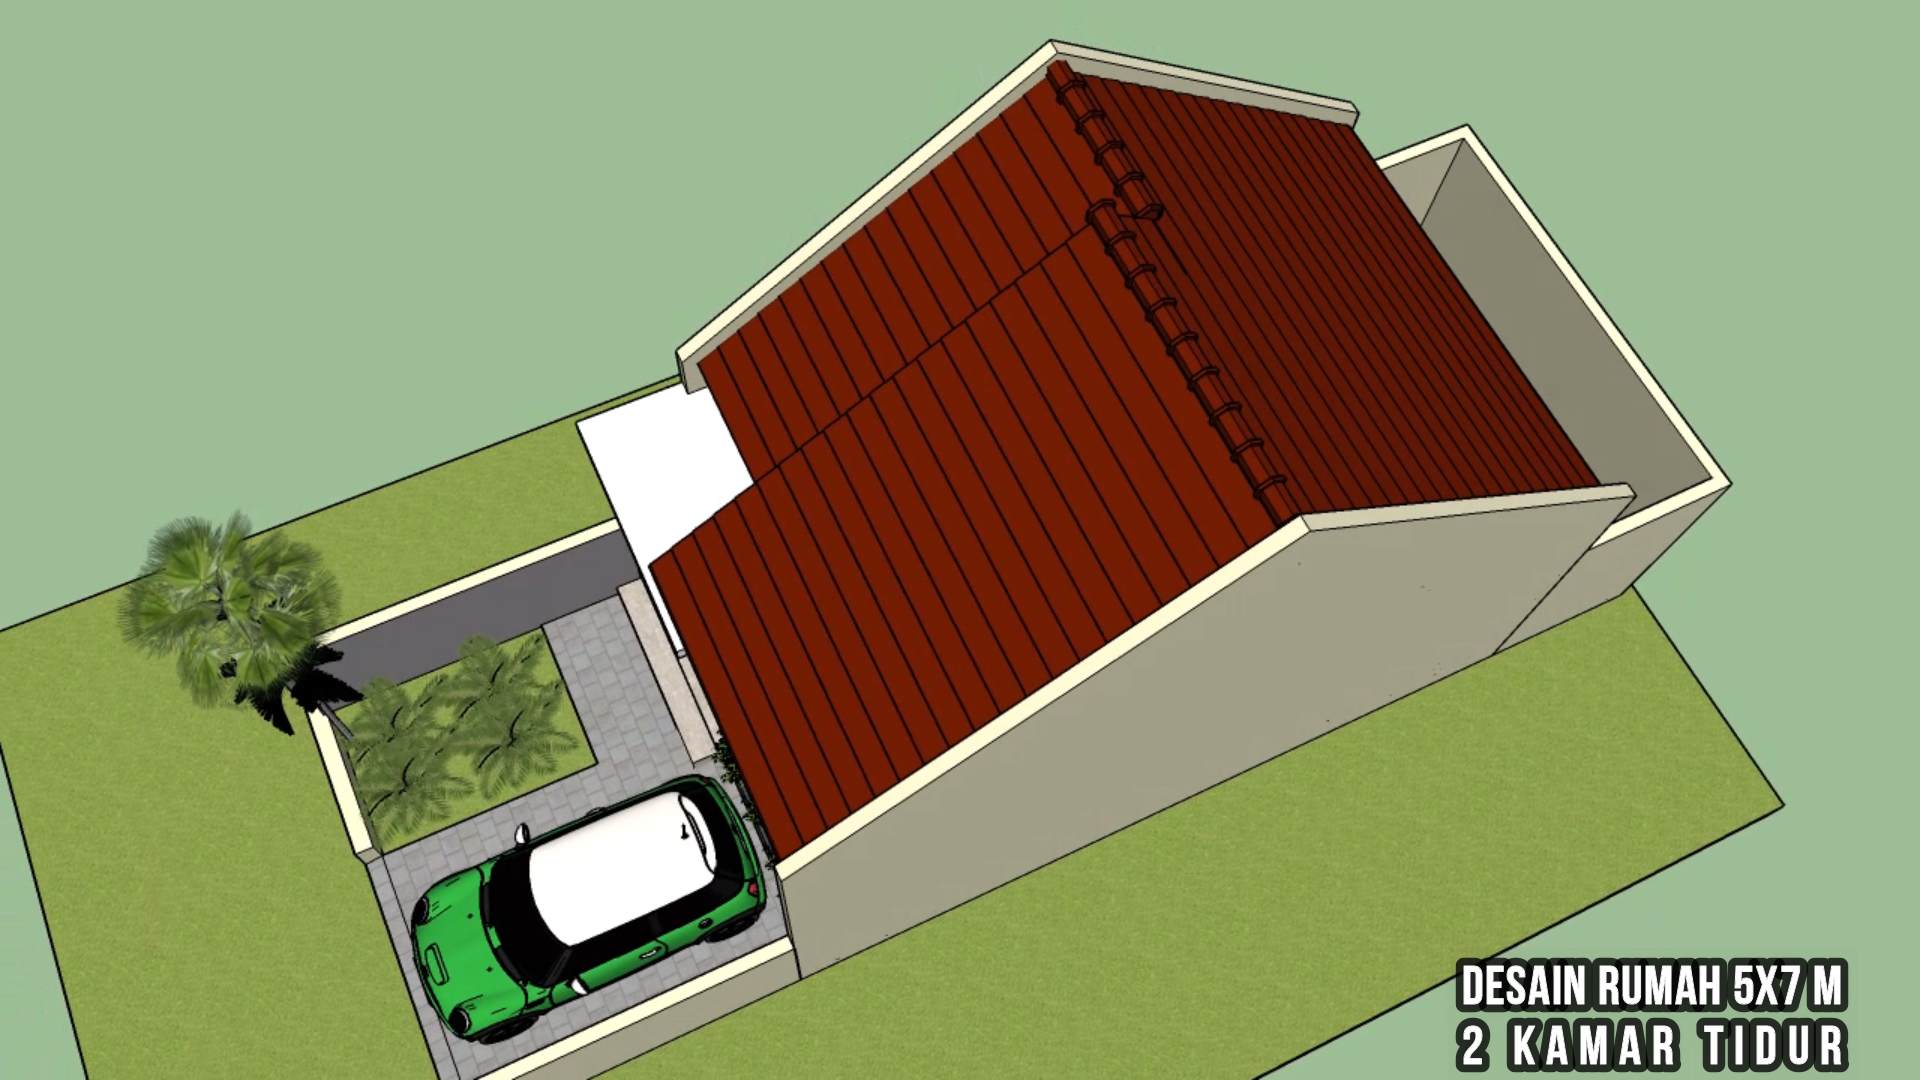 Desain Rumah Minimalis 5x7m Jasa Desain Gambar Rumah Minimalis Online Murah Harga Terjangkau